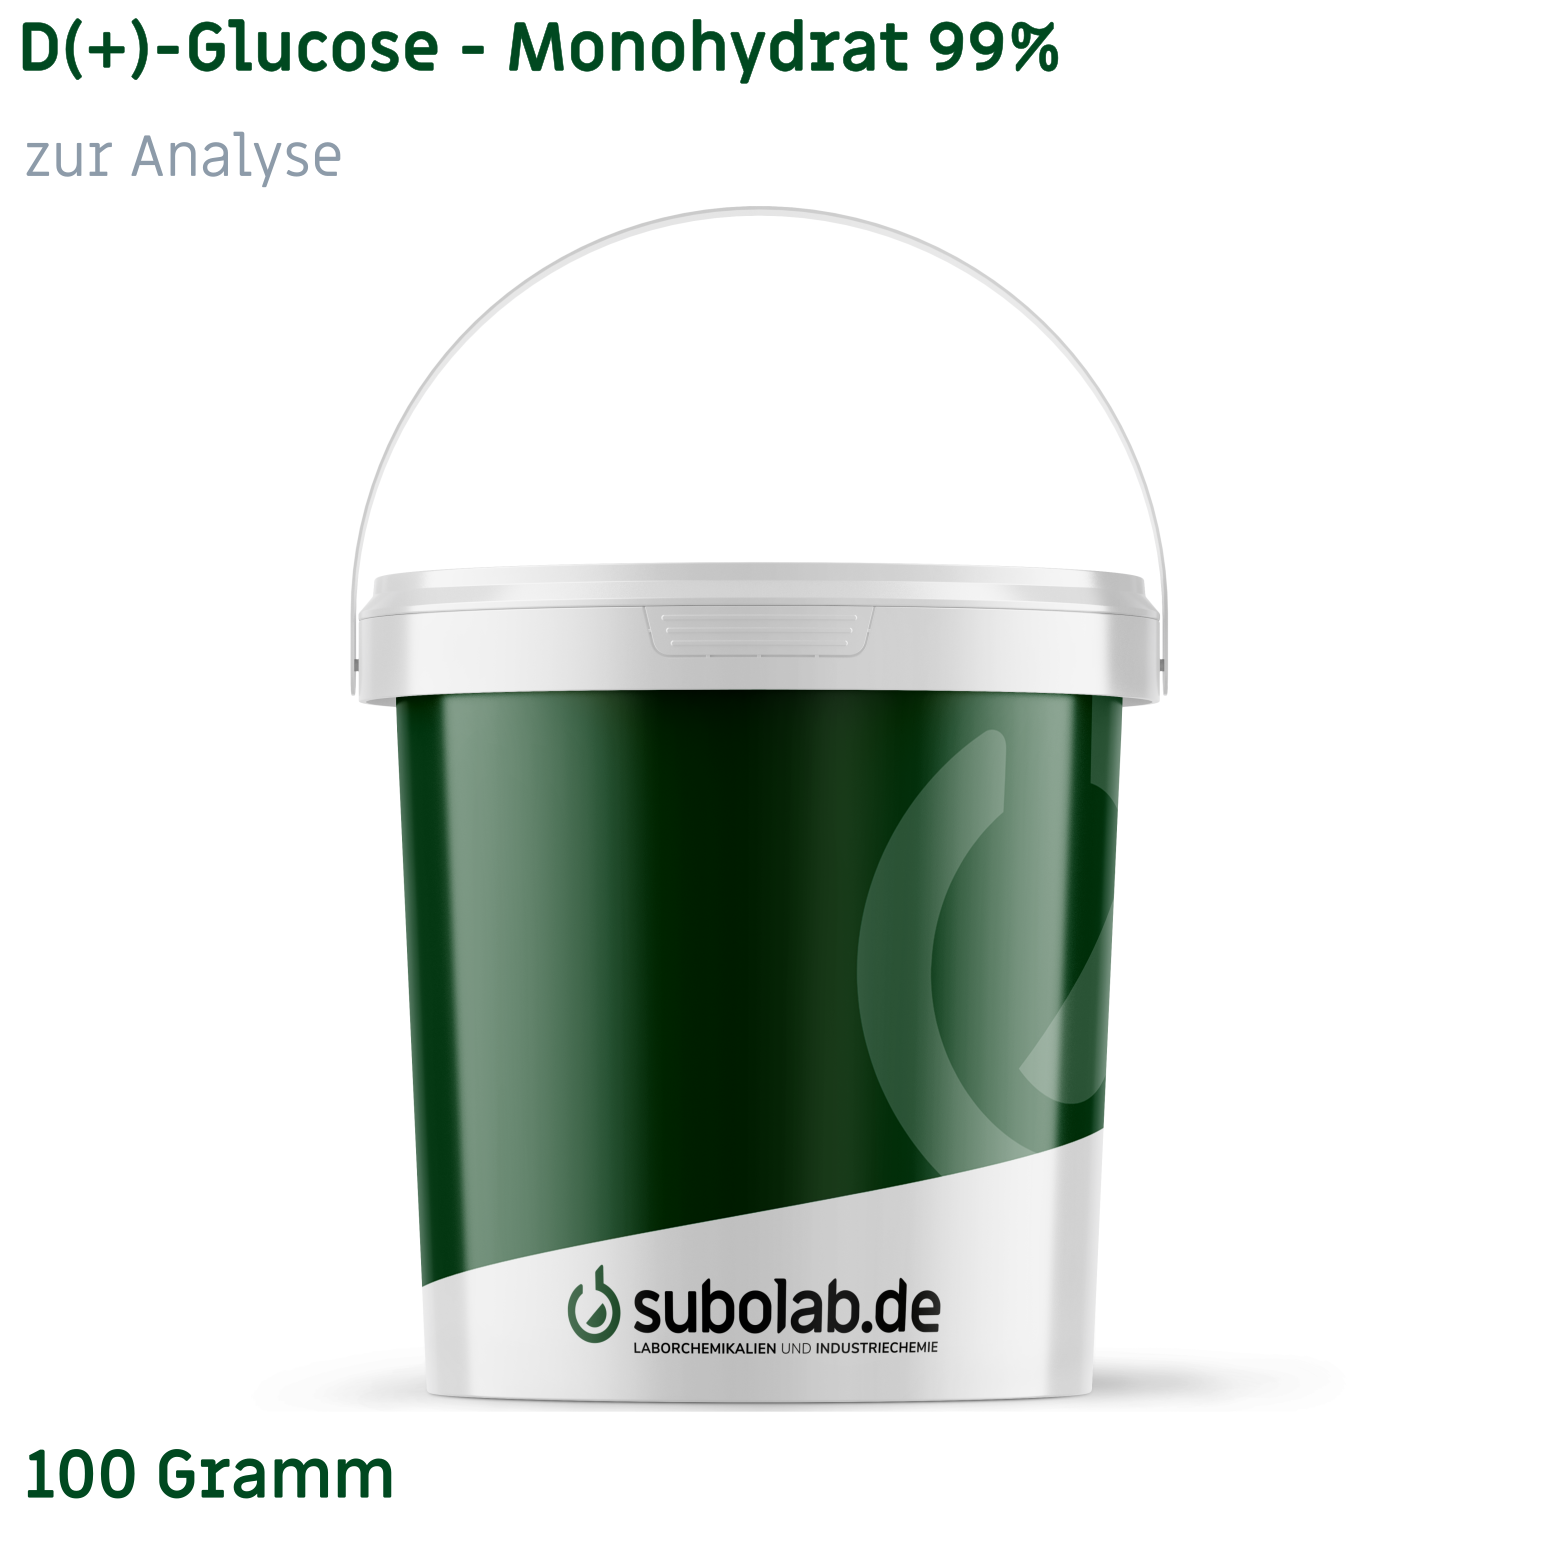 Bild von D(+)-Glucose - Monohydrat 99% zur Analyse (100 Gramm)